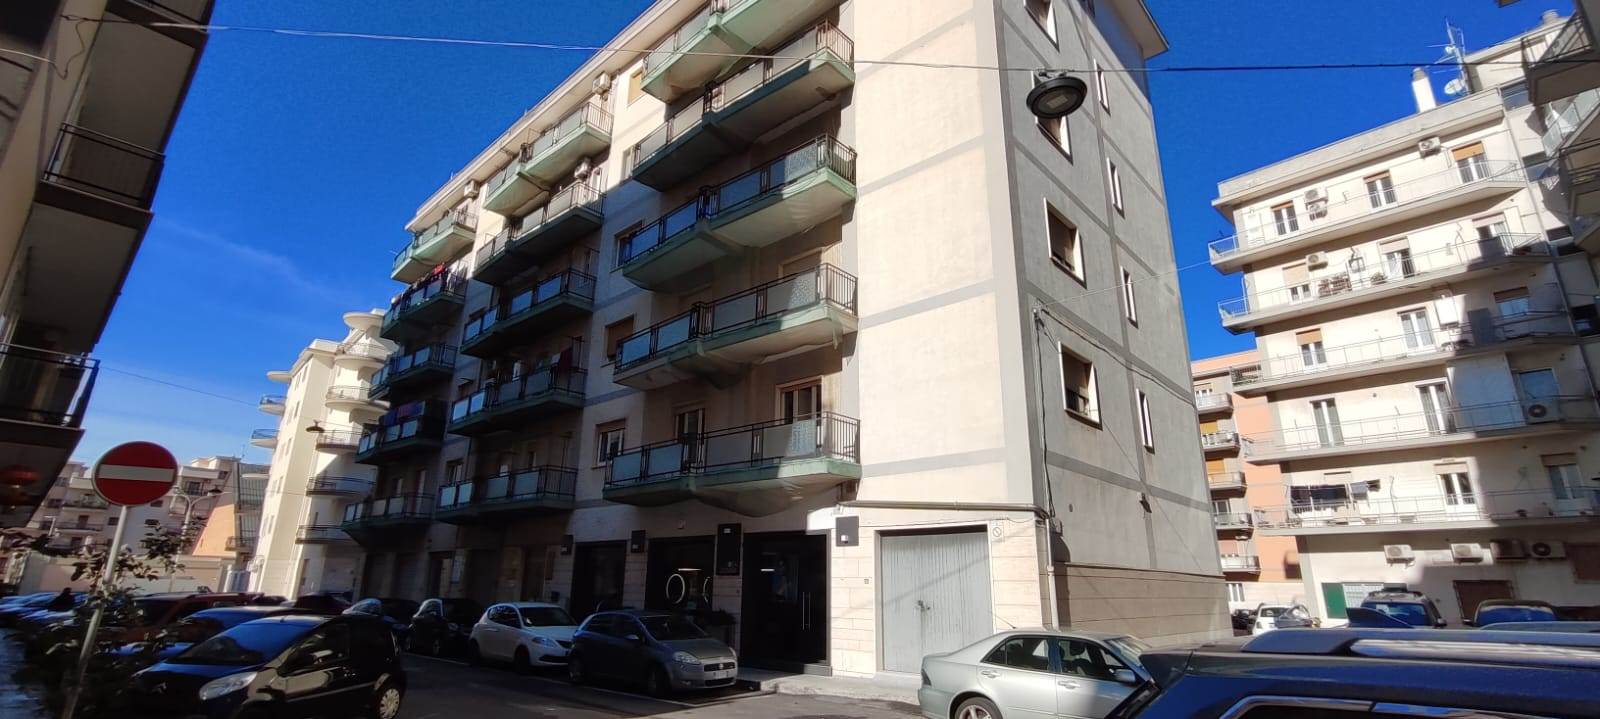 Appartamento in vendita a Martina Franca, 6 locali, prezzo € 210.000 | PortaleAgenzieImmobiliari.it